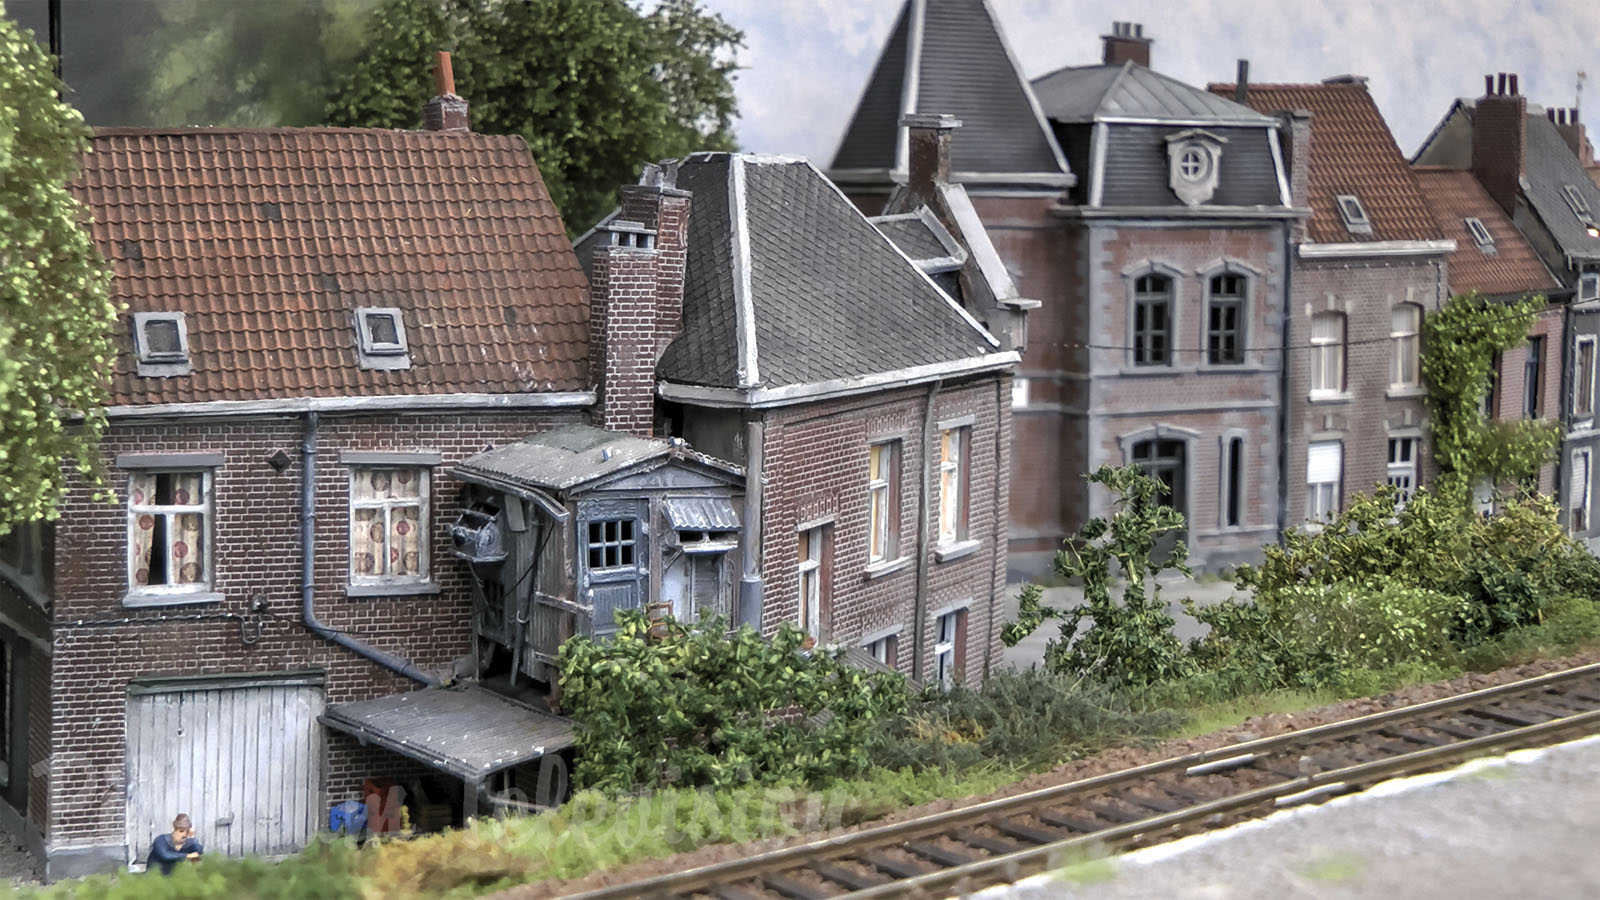 Maquette de trains miniatures à l’échelle HO de la Belgique - Diorama Doublenghien de Alan Jockmans